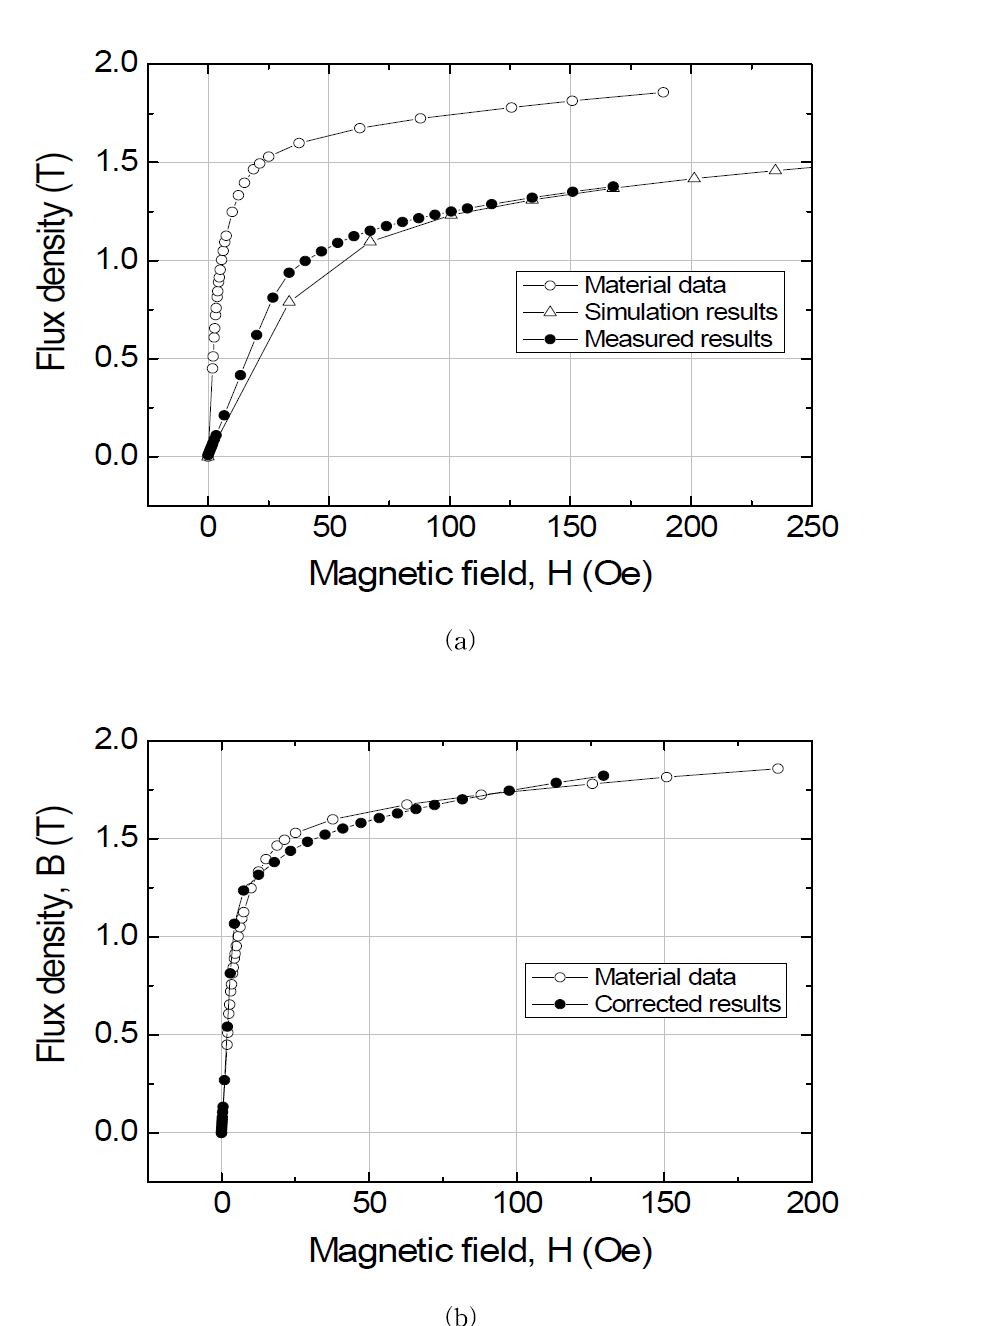 자기장에 따른 폴 간극에서 측정된 자속 밀도 곡선(a)와 반자장을 고려한 자속밀도곡선(b)